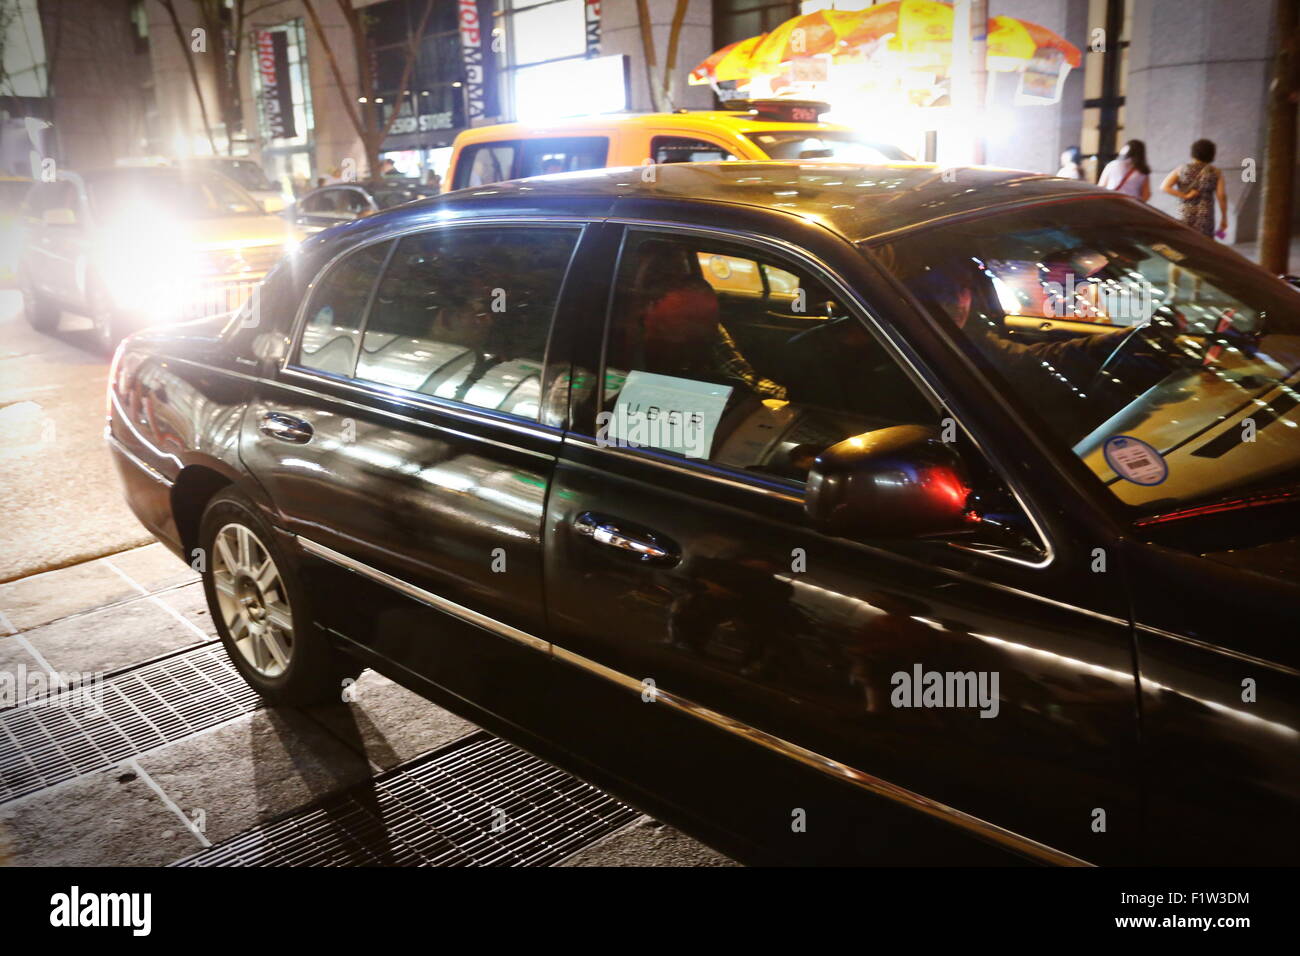 New York est teinté de noir. Taxi jaune, l'un des symboles de la ville, a tendance plus au noir, grâce à l'invasion des voitures Uber généralement noir. NEW YORK, le 6 septembre 2015. Banque D'Images